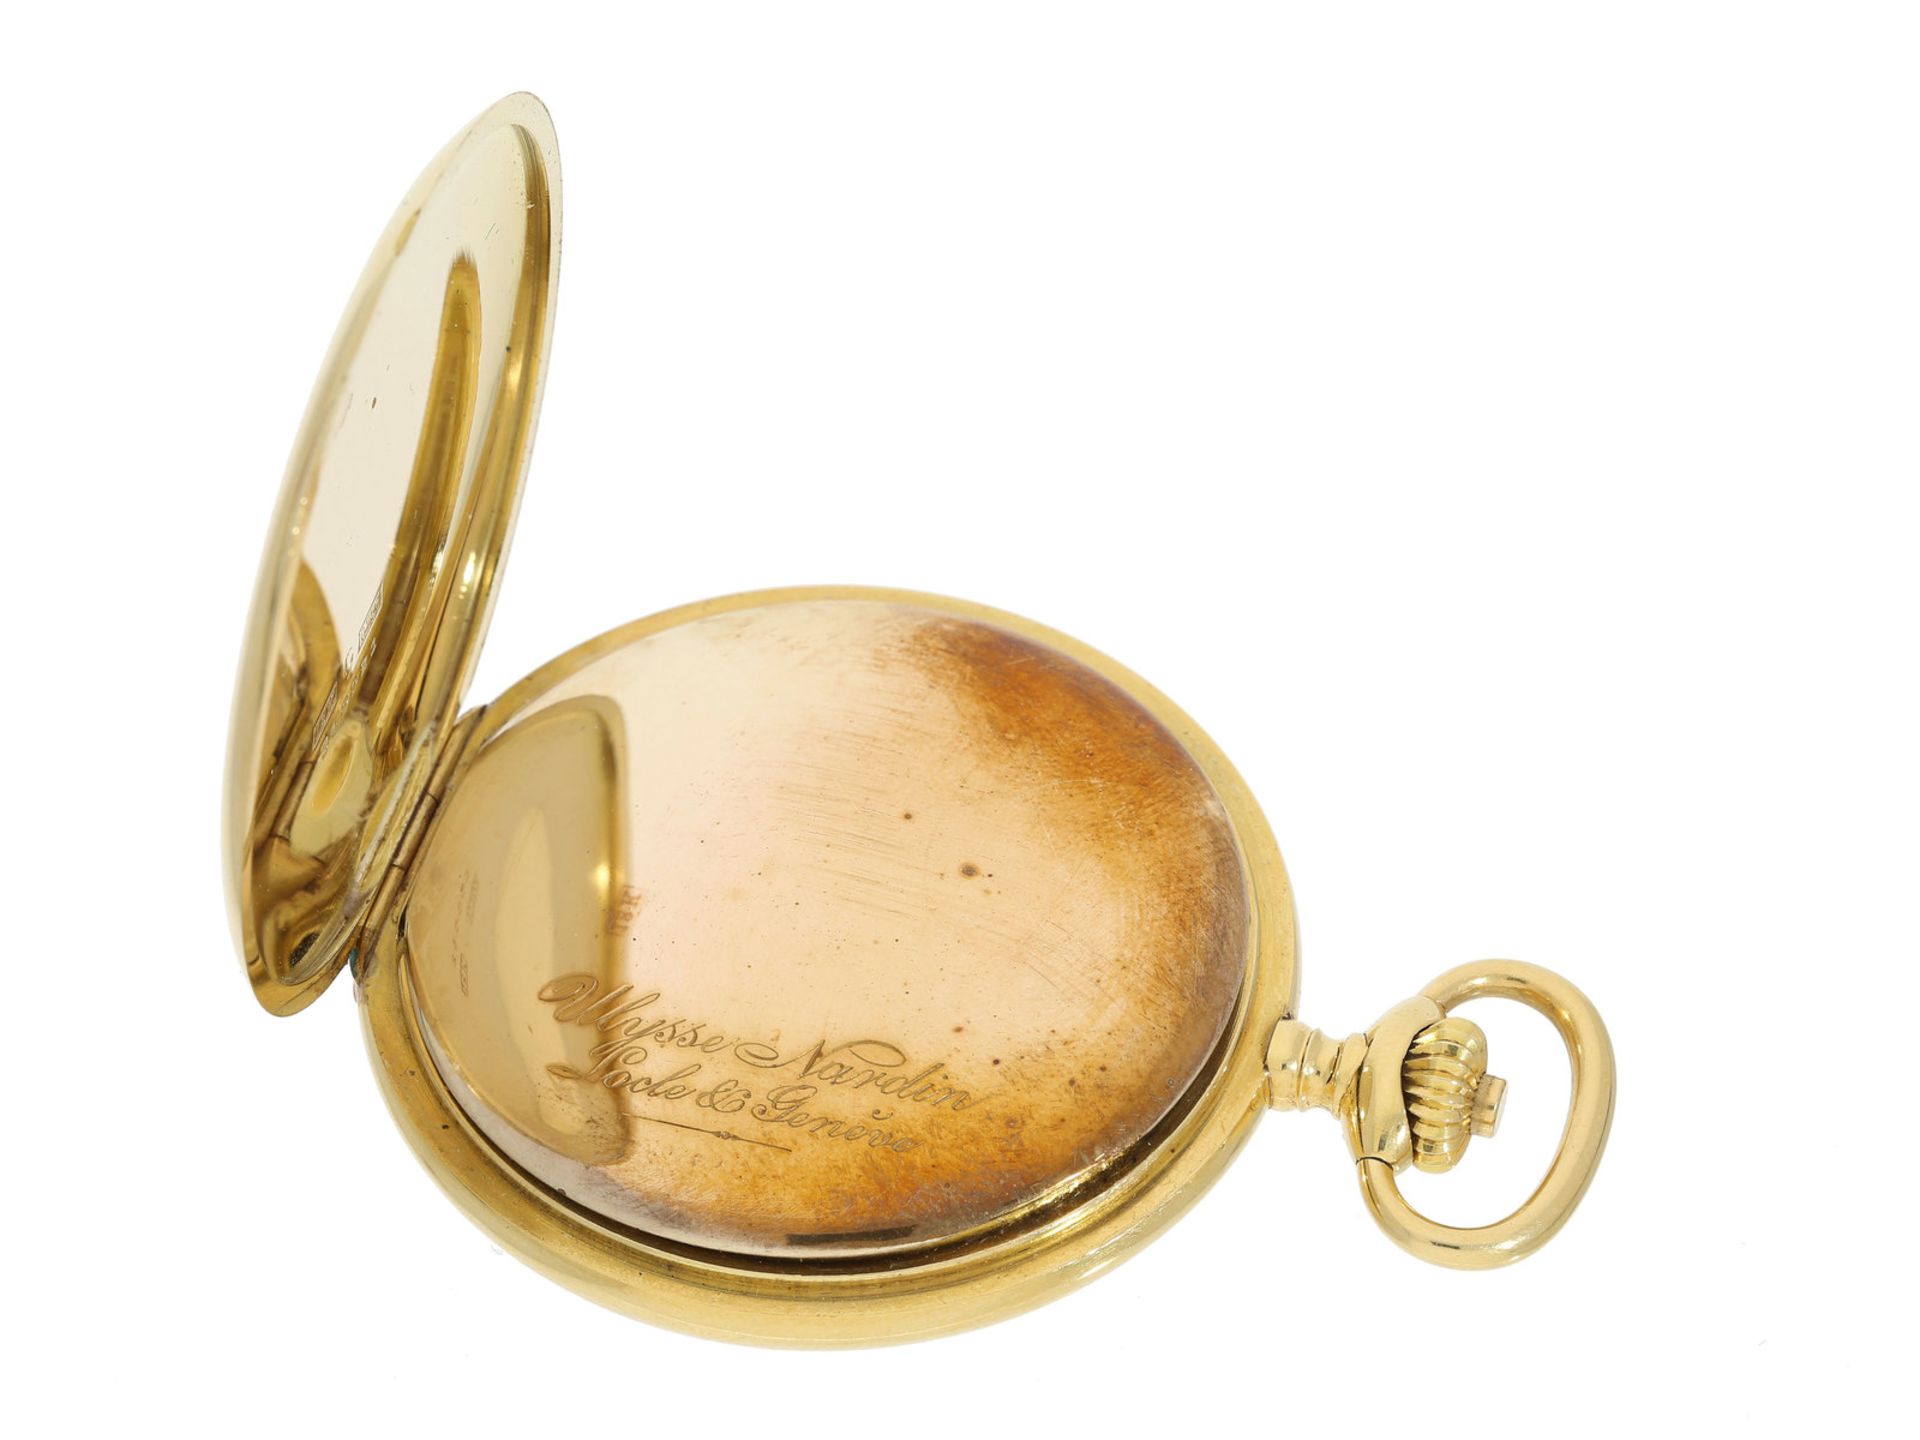 Taschenuhr: exquisite Präzisionstaschenuhr, 18K Gold, Ulysse Nardin, ca. 1920 Ca. Ø51mm, ca. 92g, - Bild 2 aus 3